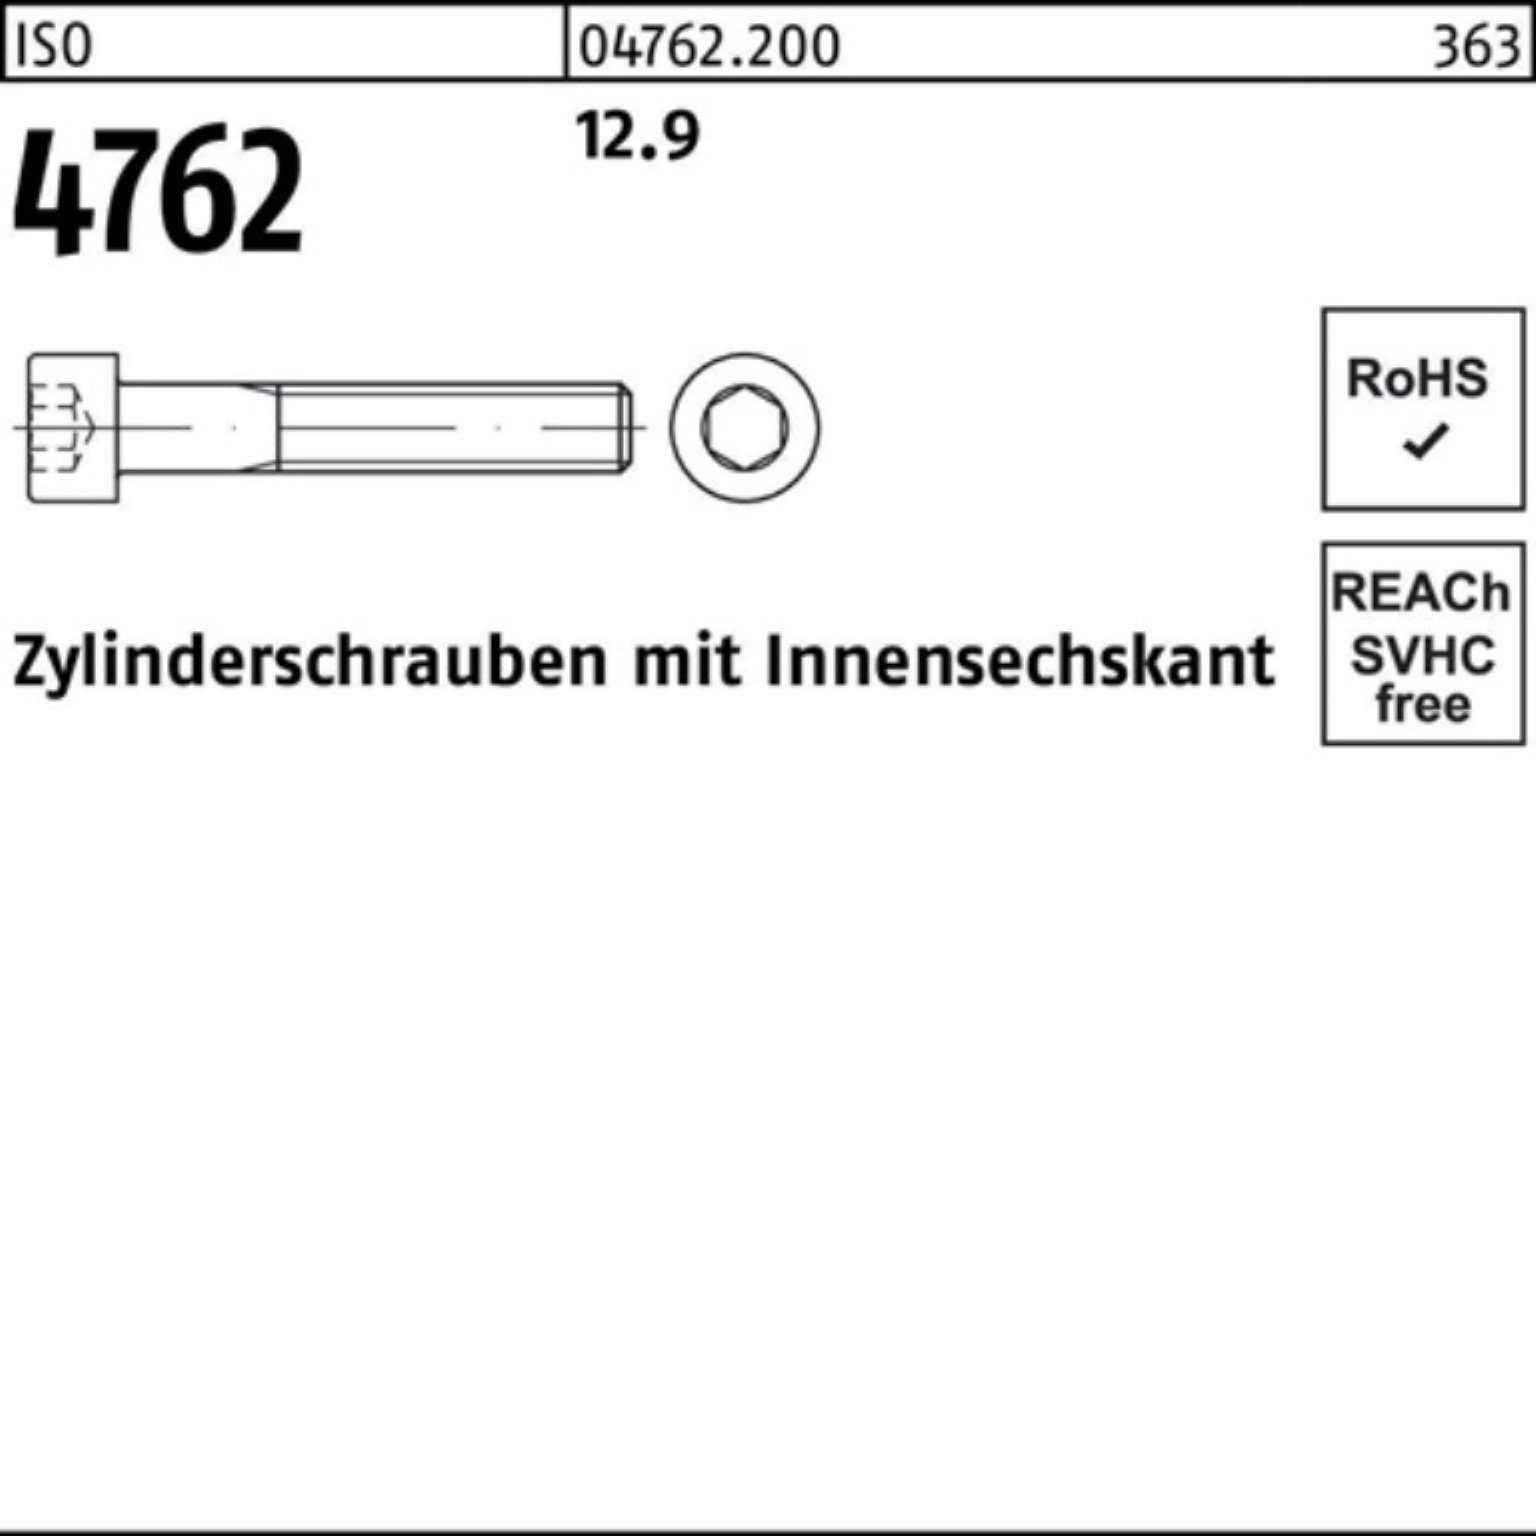 Stück Pack ISO Zylinderschraube Zylinderschraube 4762 500 12.9 500er Reyher Innen-6kt 20 M4x